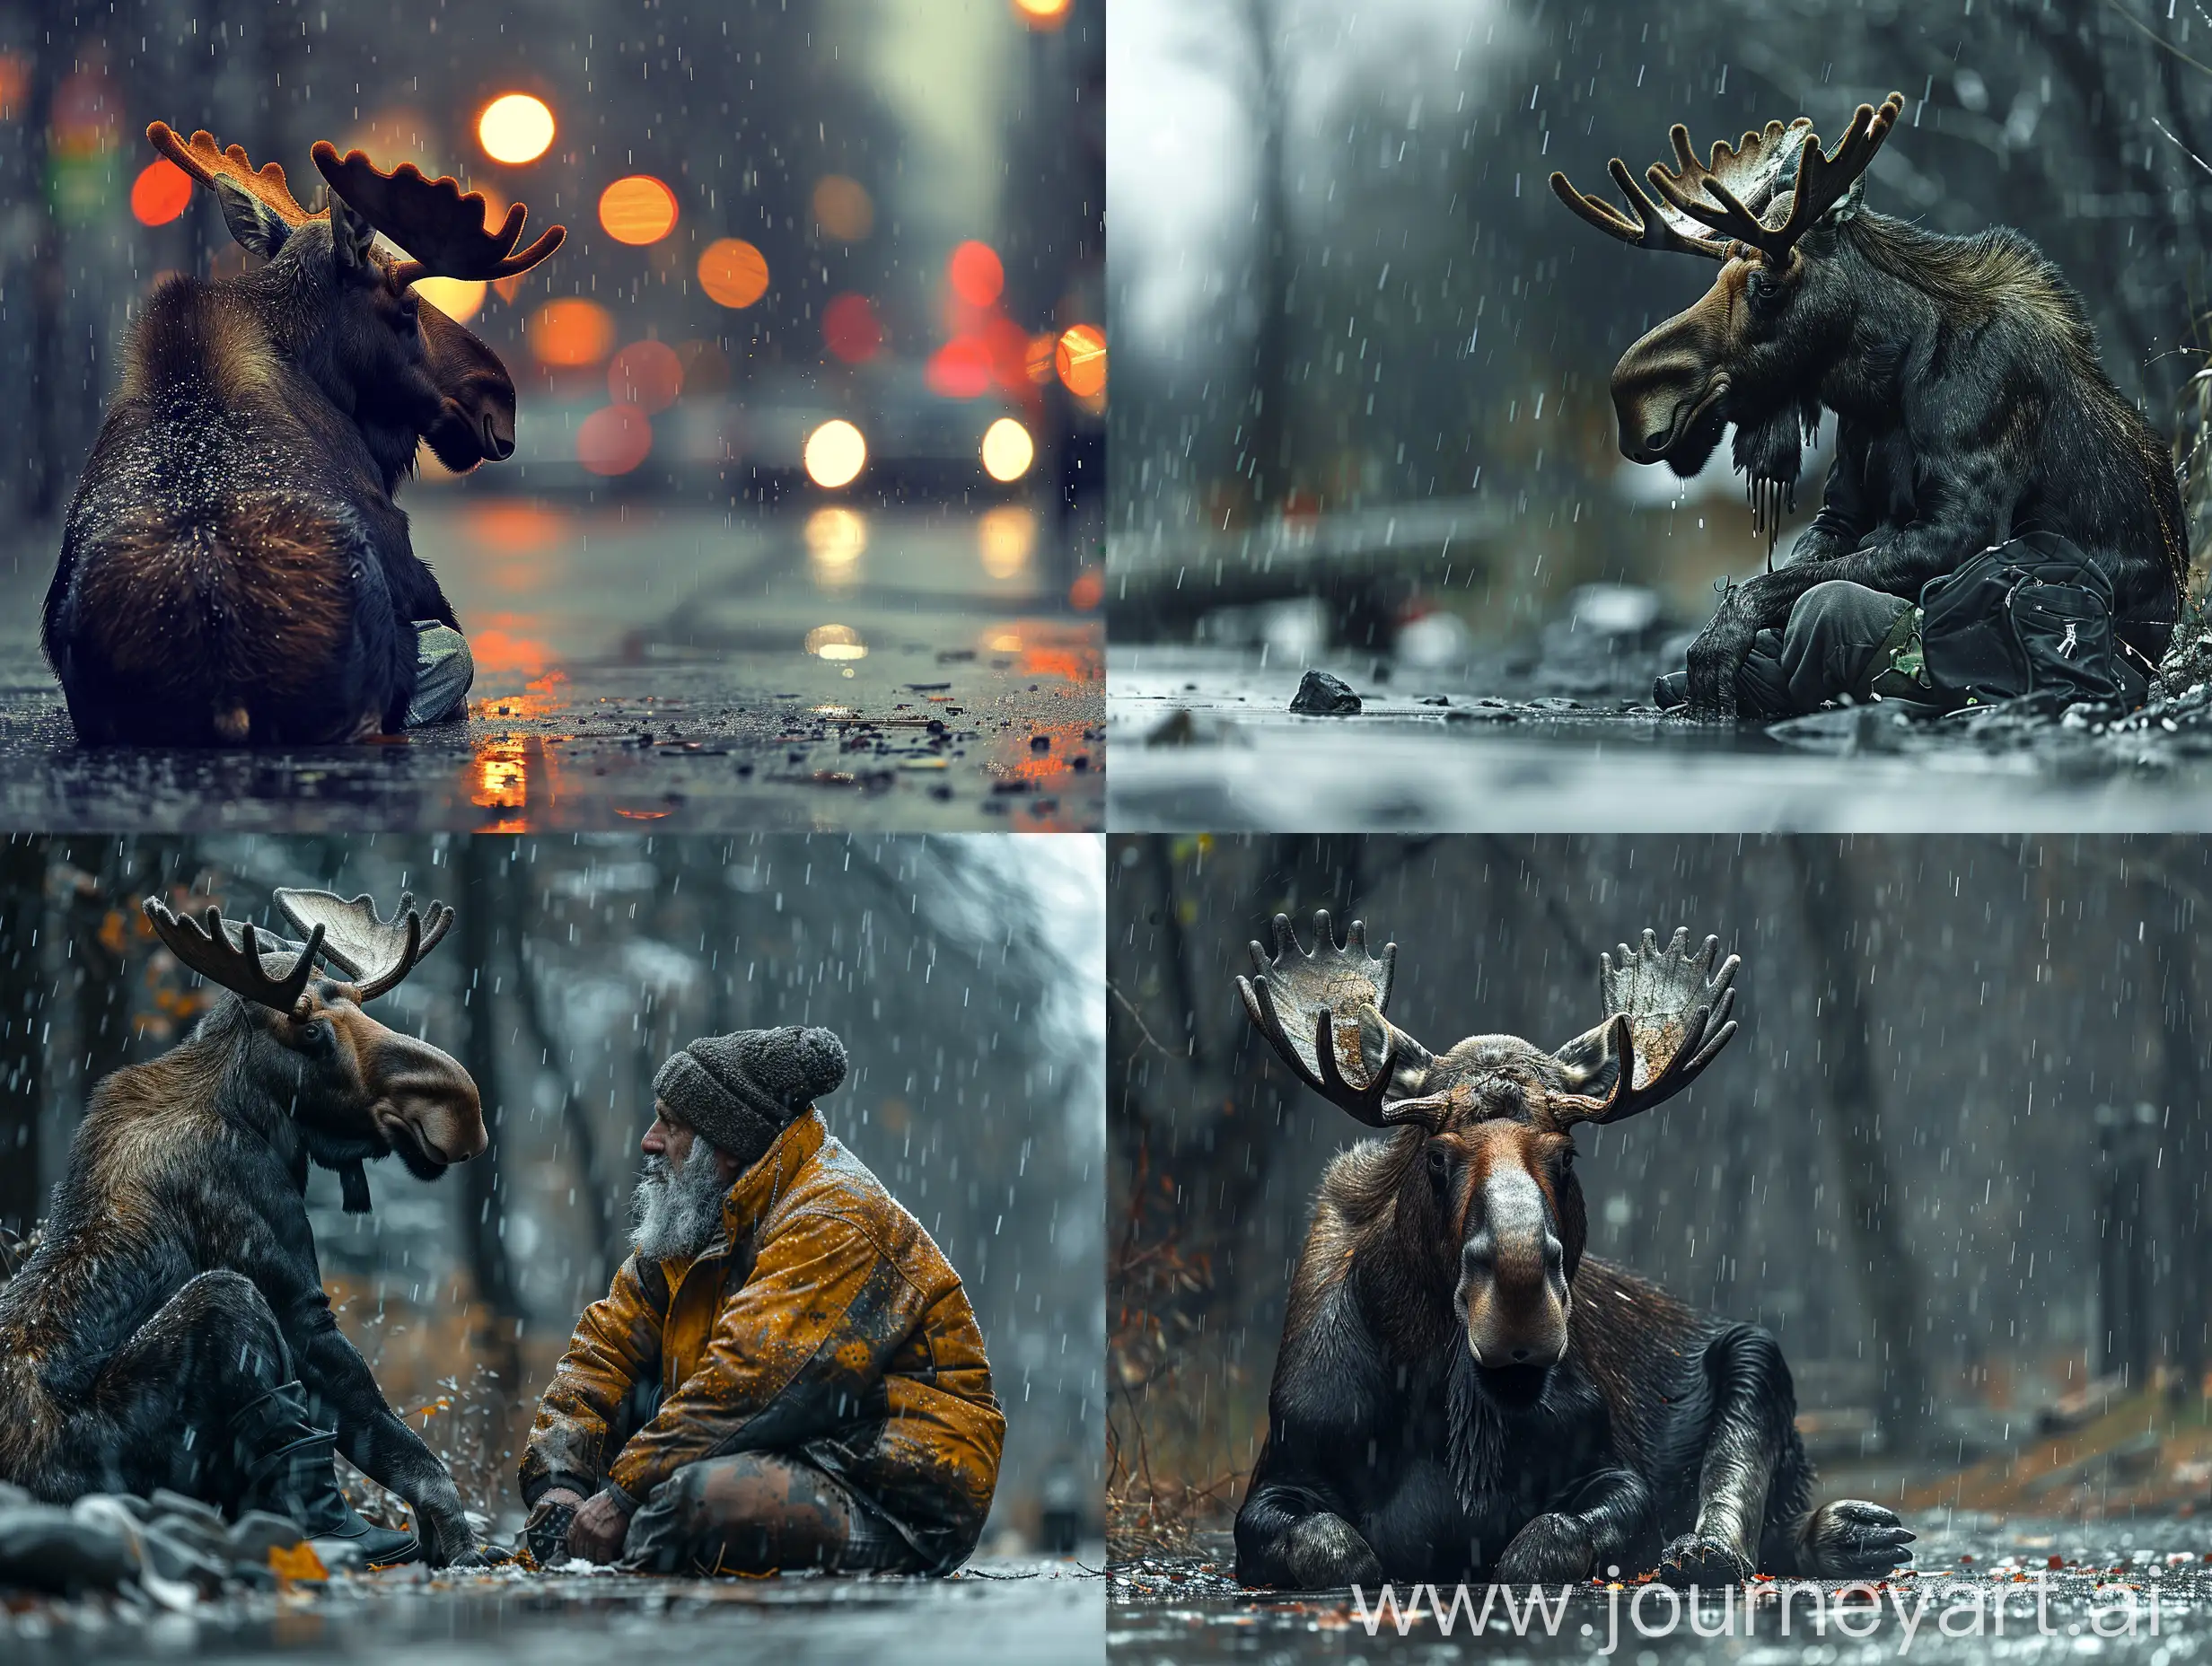 photo, moose, homeless, alcoholic, depressed, sitting, on the street, raining --style raw --stylize 750